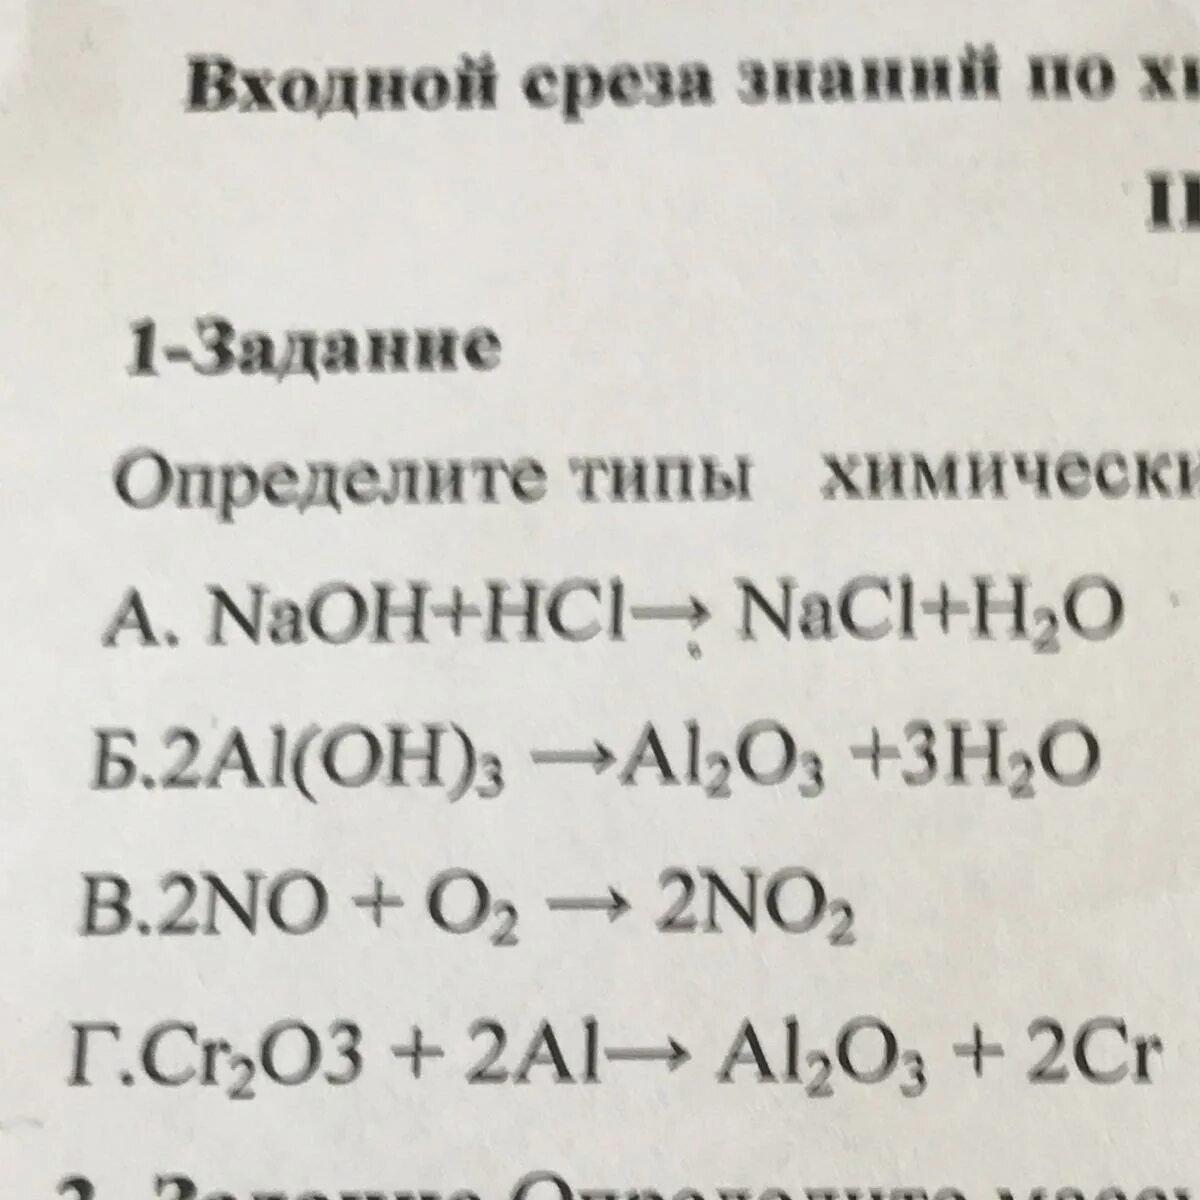 Ва hci. Уравнение хим реакции NAOH+HCI=Naci+h2o. А1(он)3 → а1203 + н20. Раствить коэффициент NAOH + HCI = Naci +h2o. Определите Тип химической реакции , уравнение которой : HCI+NAOH-Naci+h2o.